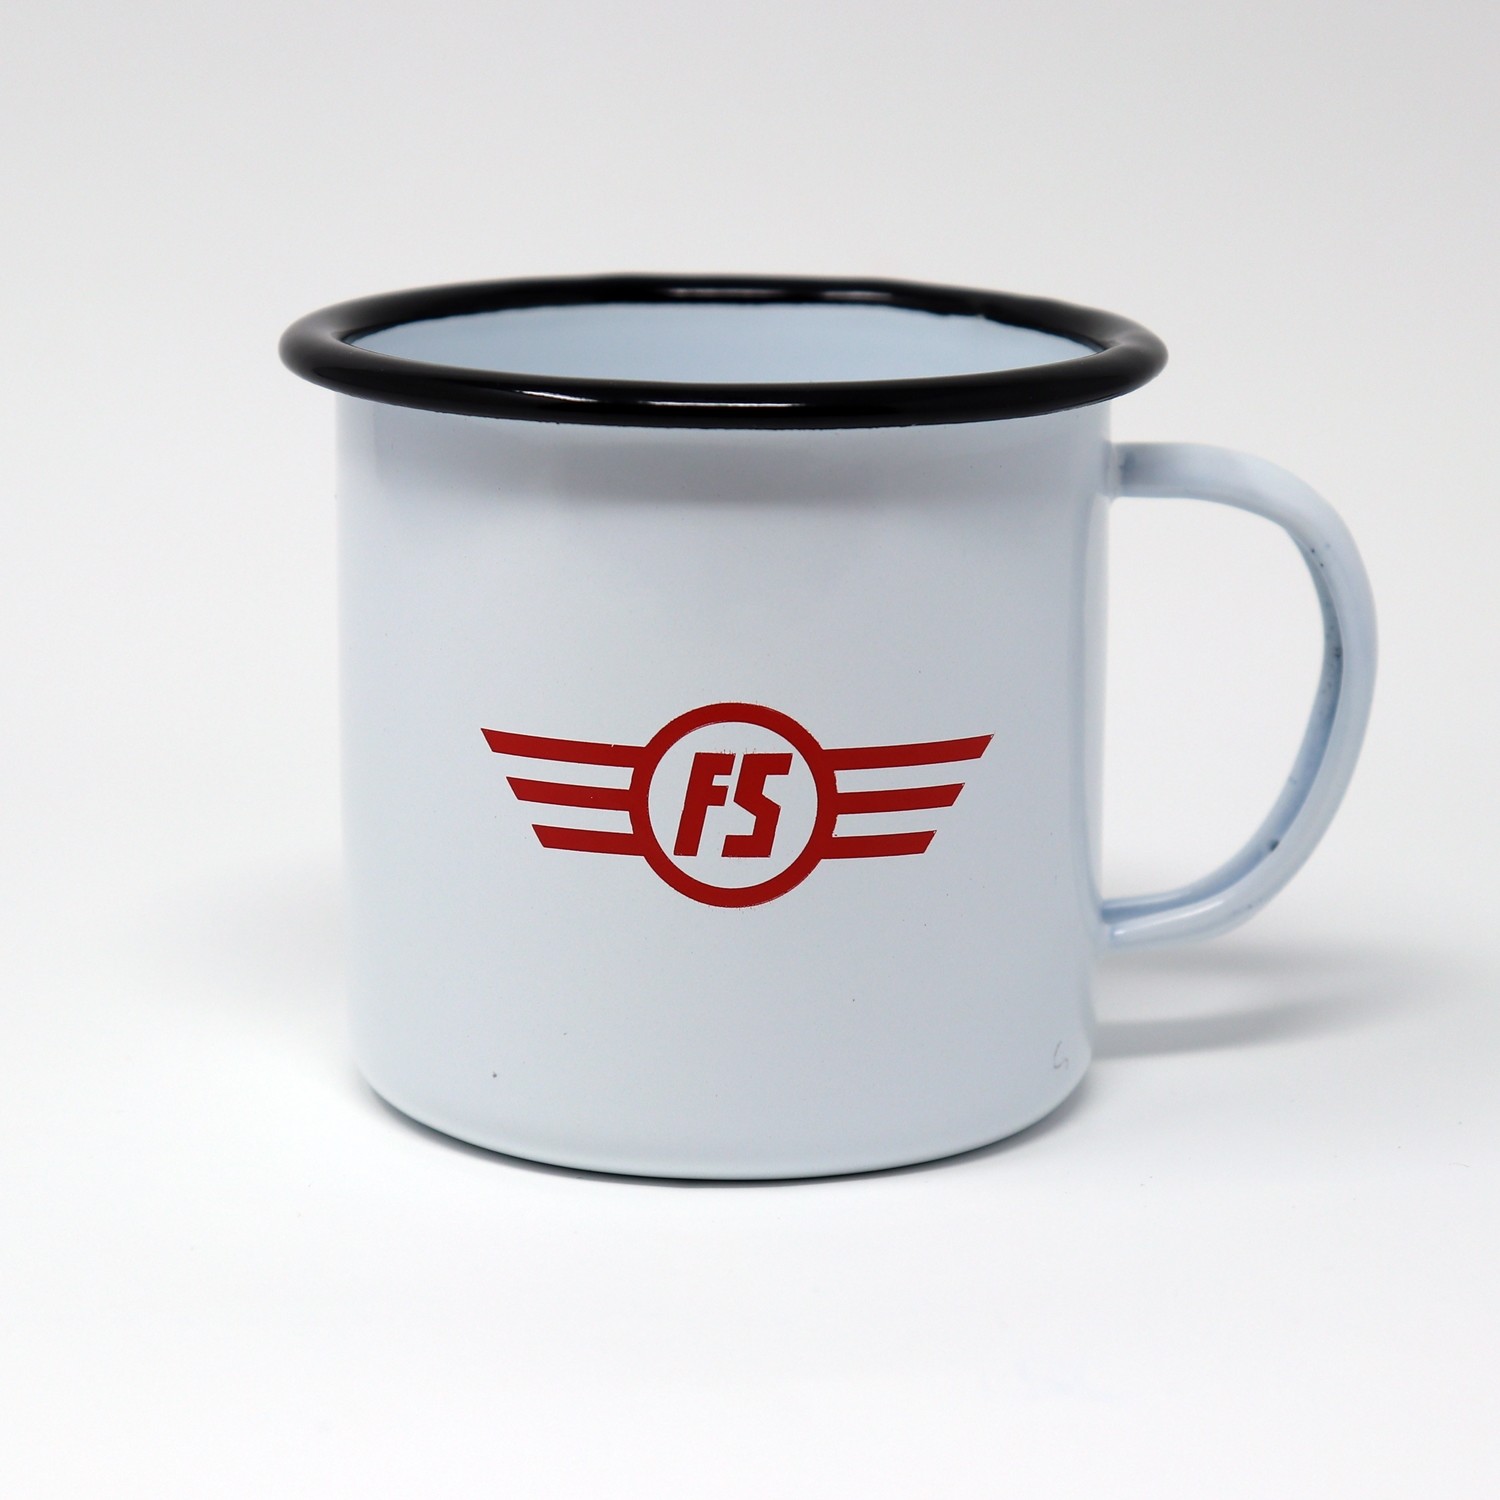 Tazza in latta con logo FS E.444